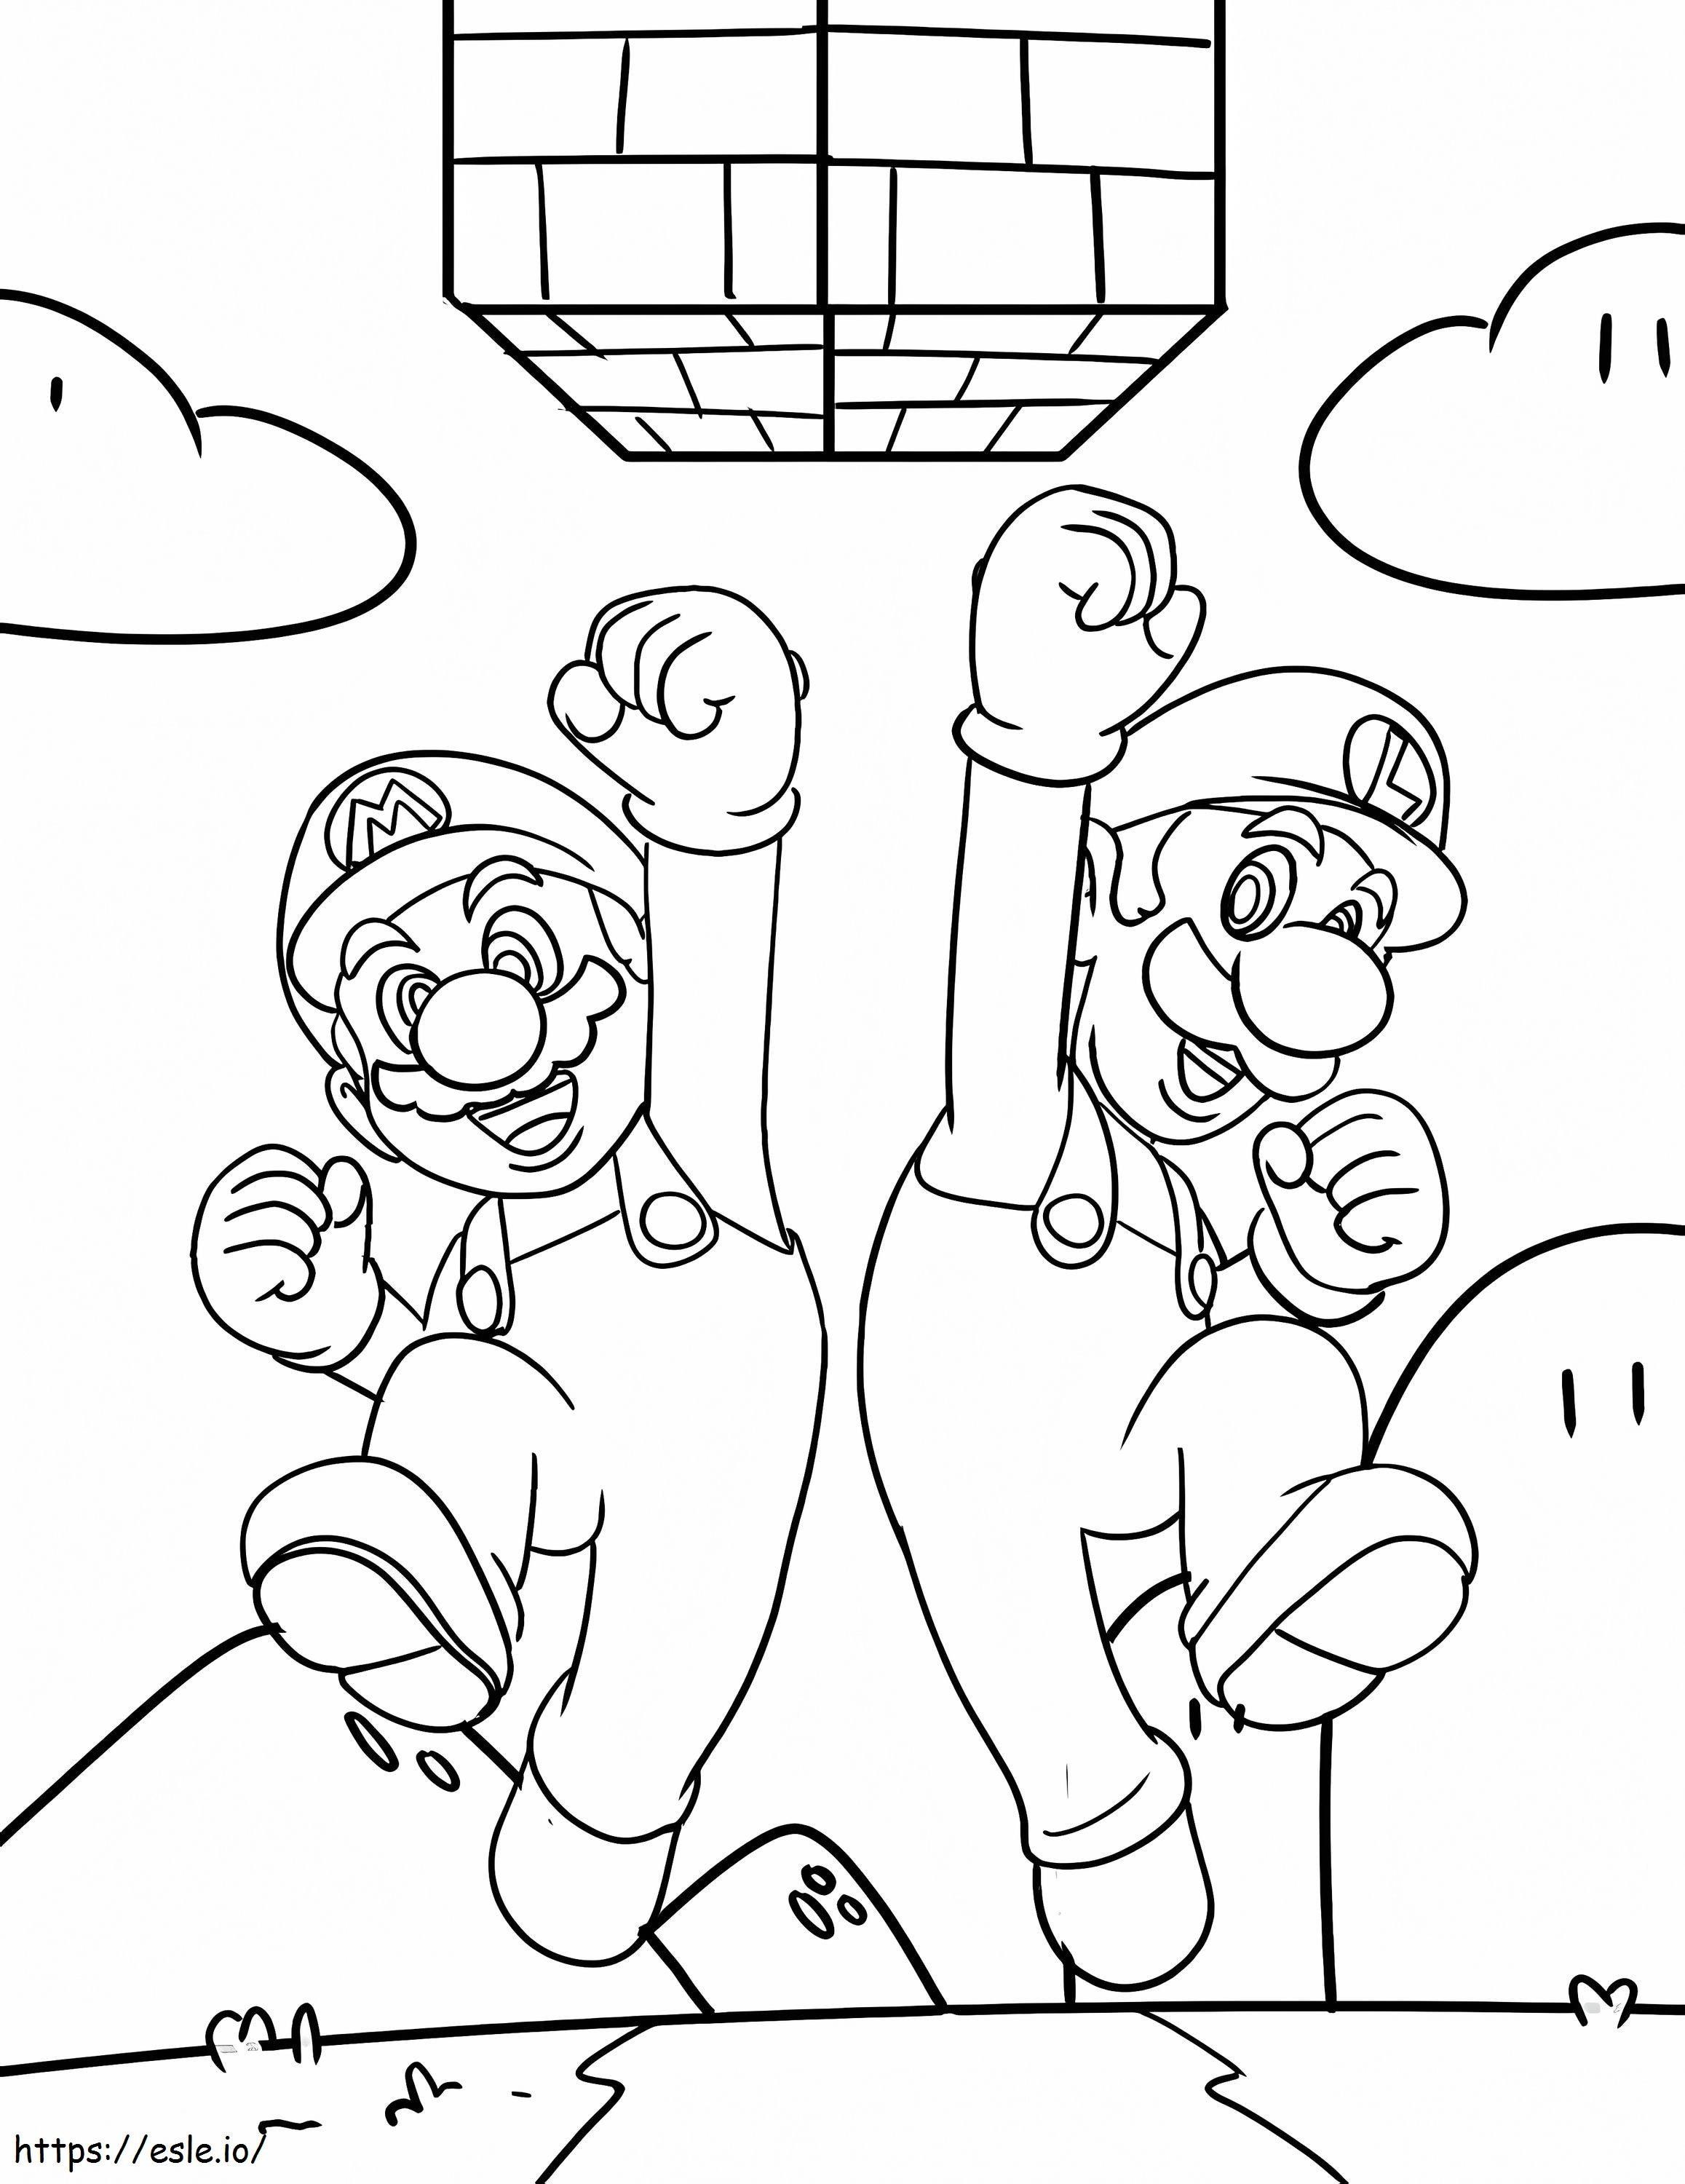 Luigi și Mario sărind de colorat